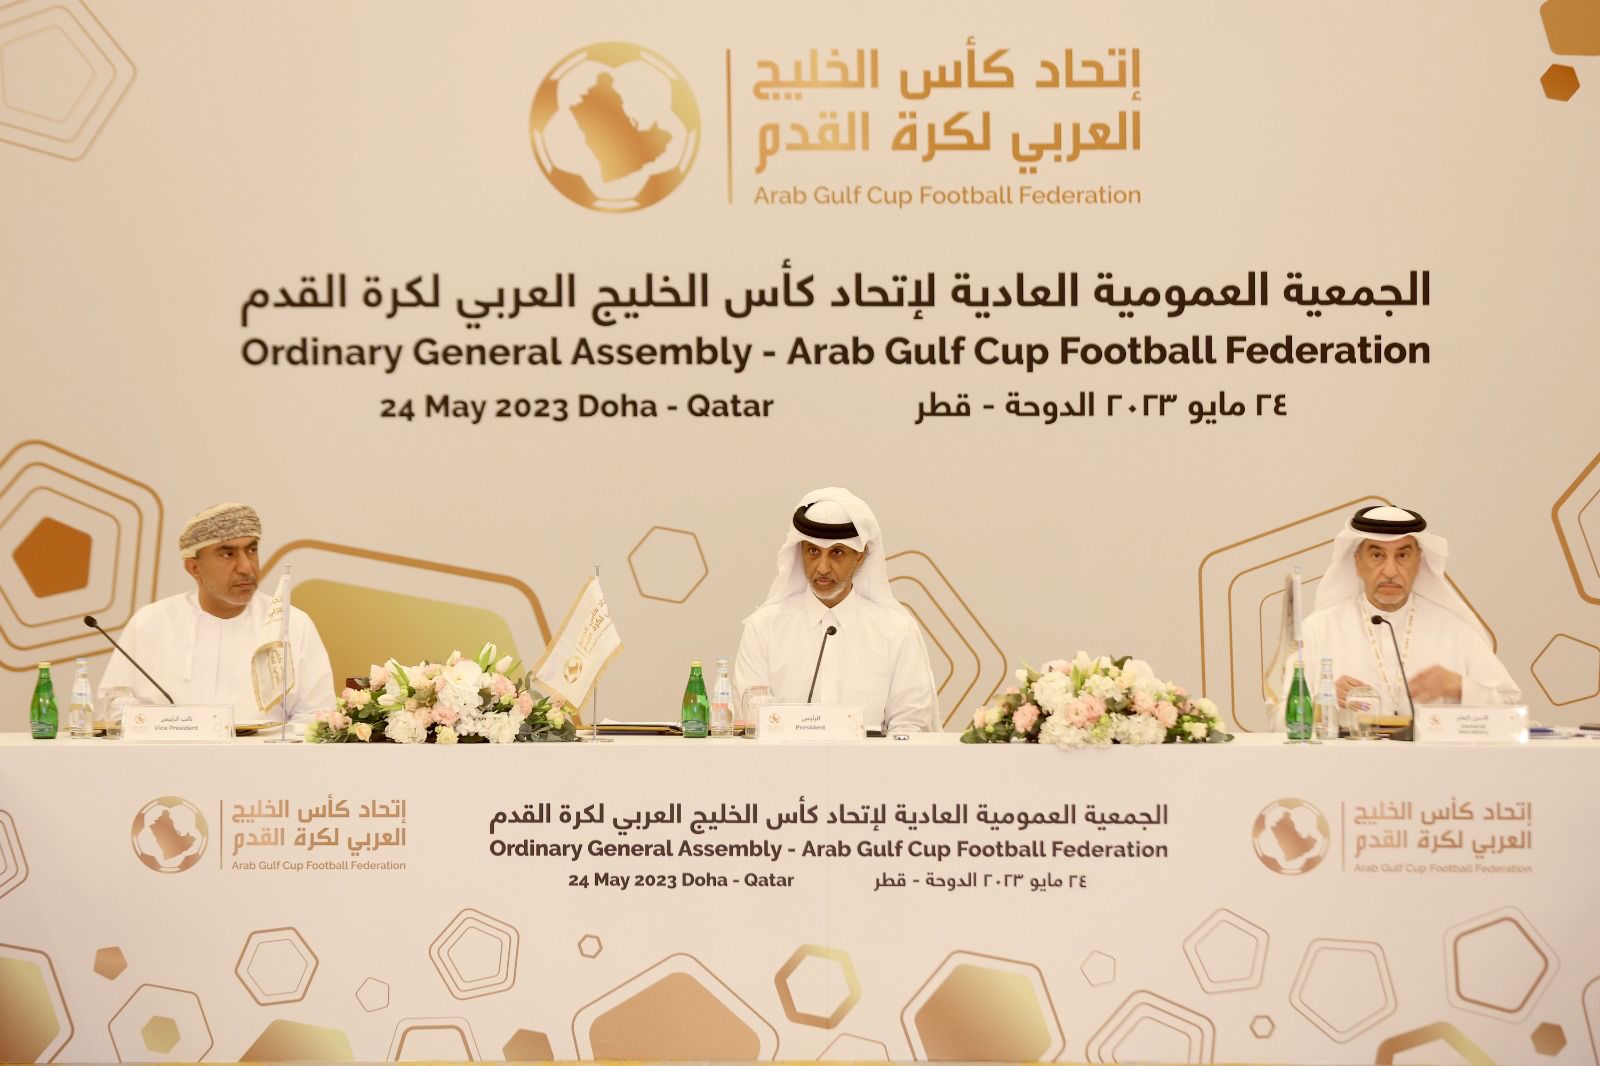  تزكية الشيخ حمد بن خليفة آل ثاني رئيساً لاتحاد كأس الخليج العربي لكرة القدم 